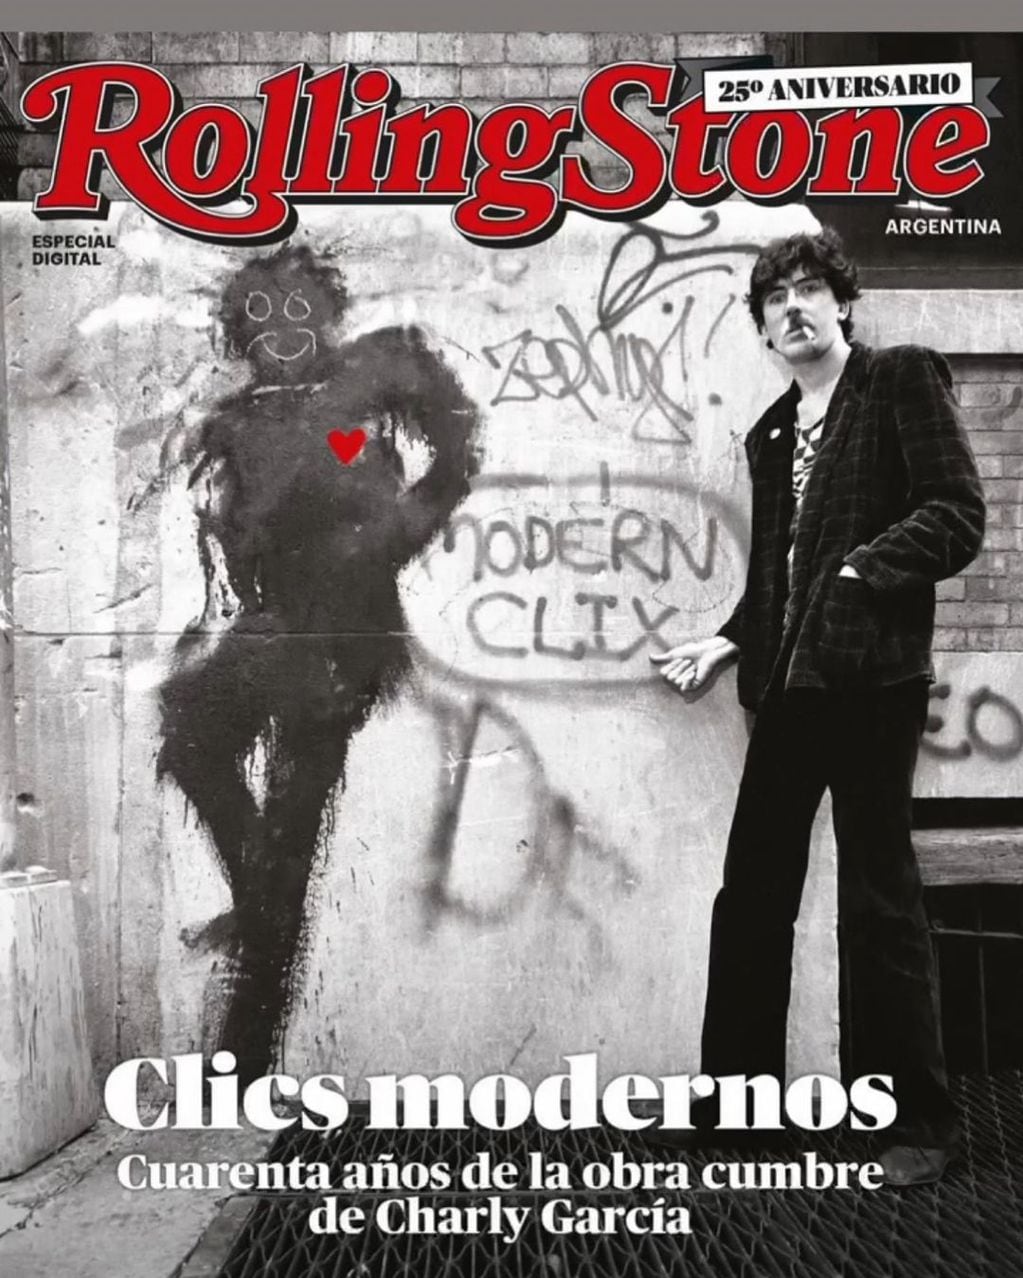 La famosa revista Rolling Stone sobre el aniversario de Clics Modernos. Foto: Instagram / @charlygarciacorner